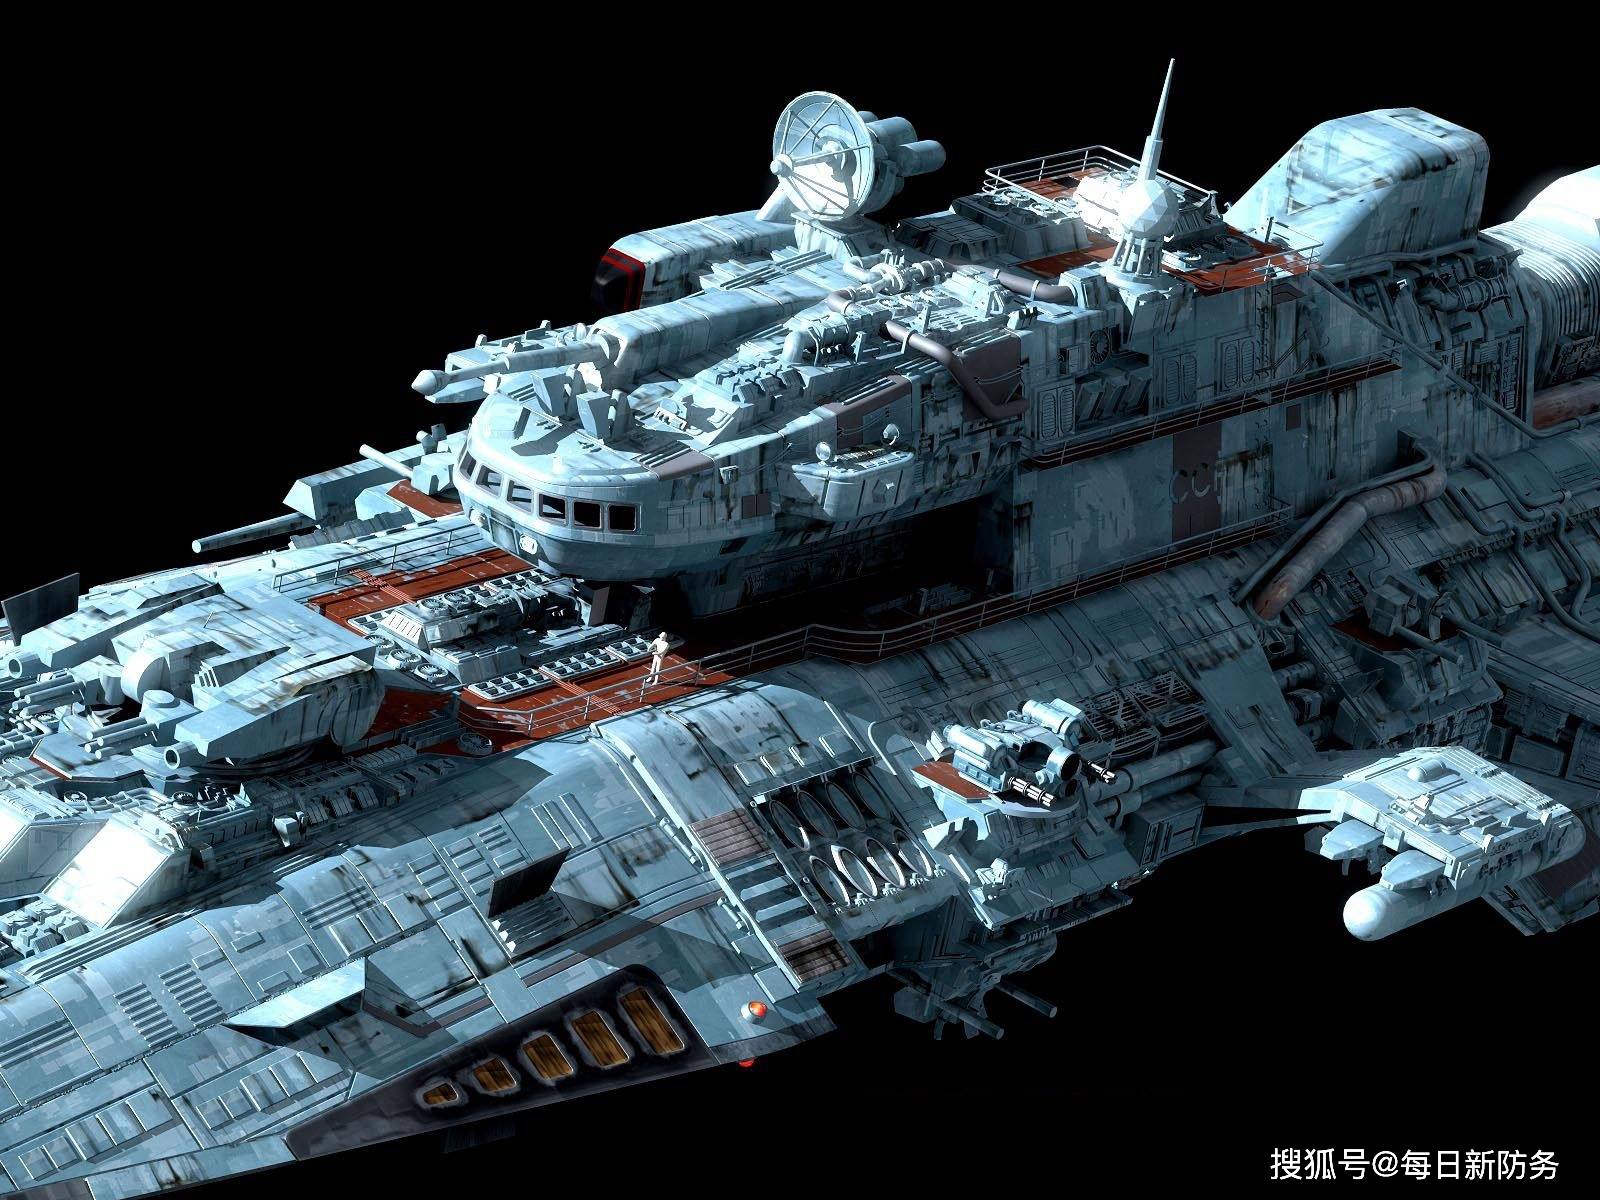 原创如何实现科幻内容中国有话要说航天项目曝光要造宇宙战舰